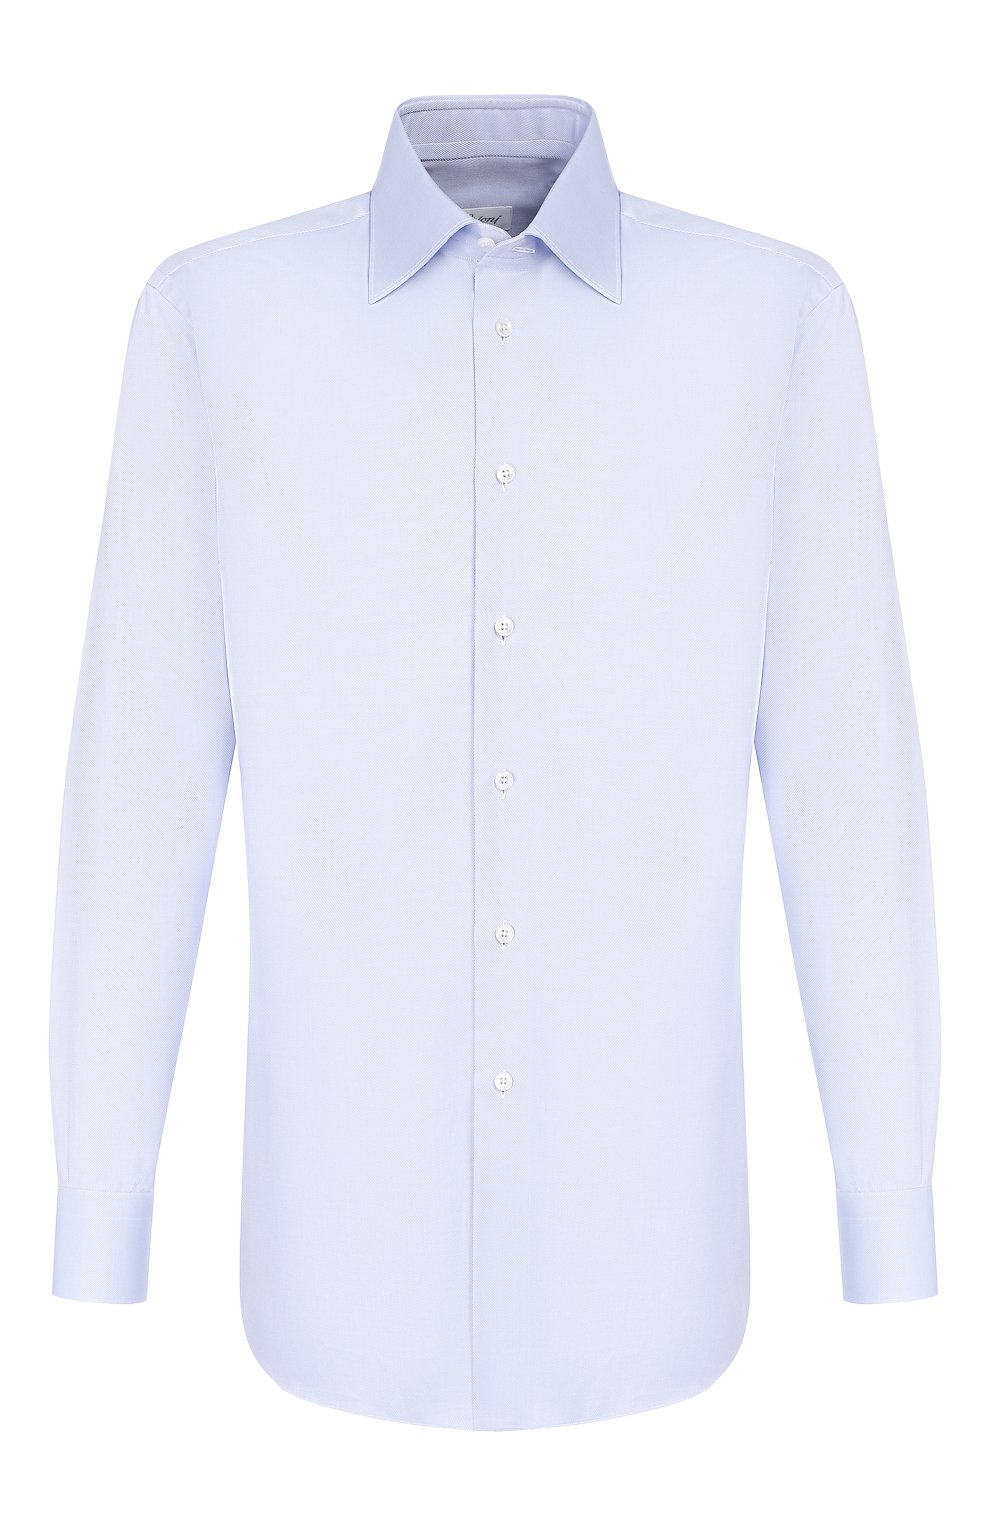 Рубашки Brioni, Хлопковая сорочка с воротником кент Brioni, Италия, Голубой, Хлопок: 100%;, 4039013  - купить